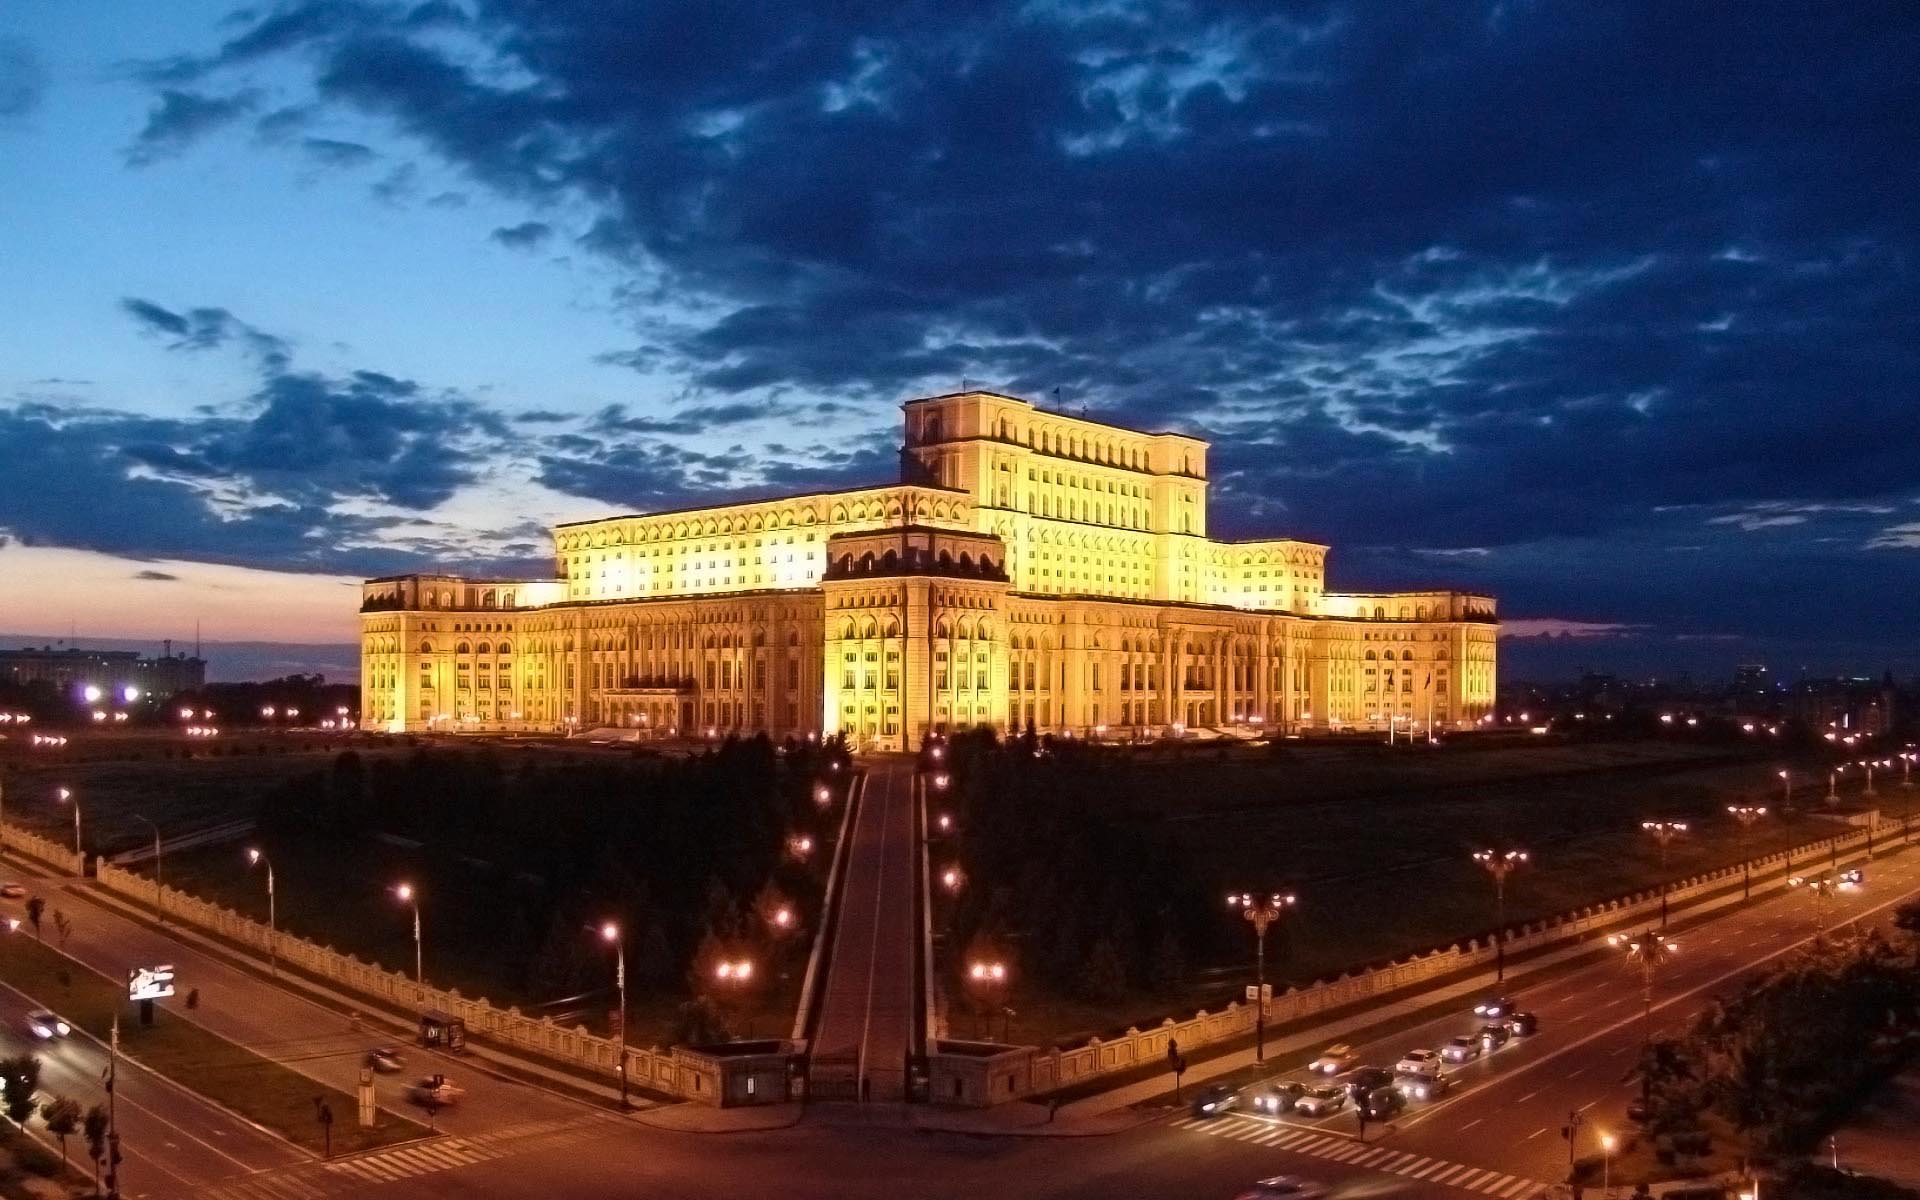 House of Parliament, Bucharest, Romania widescreen wallpaper. Wide